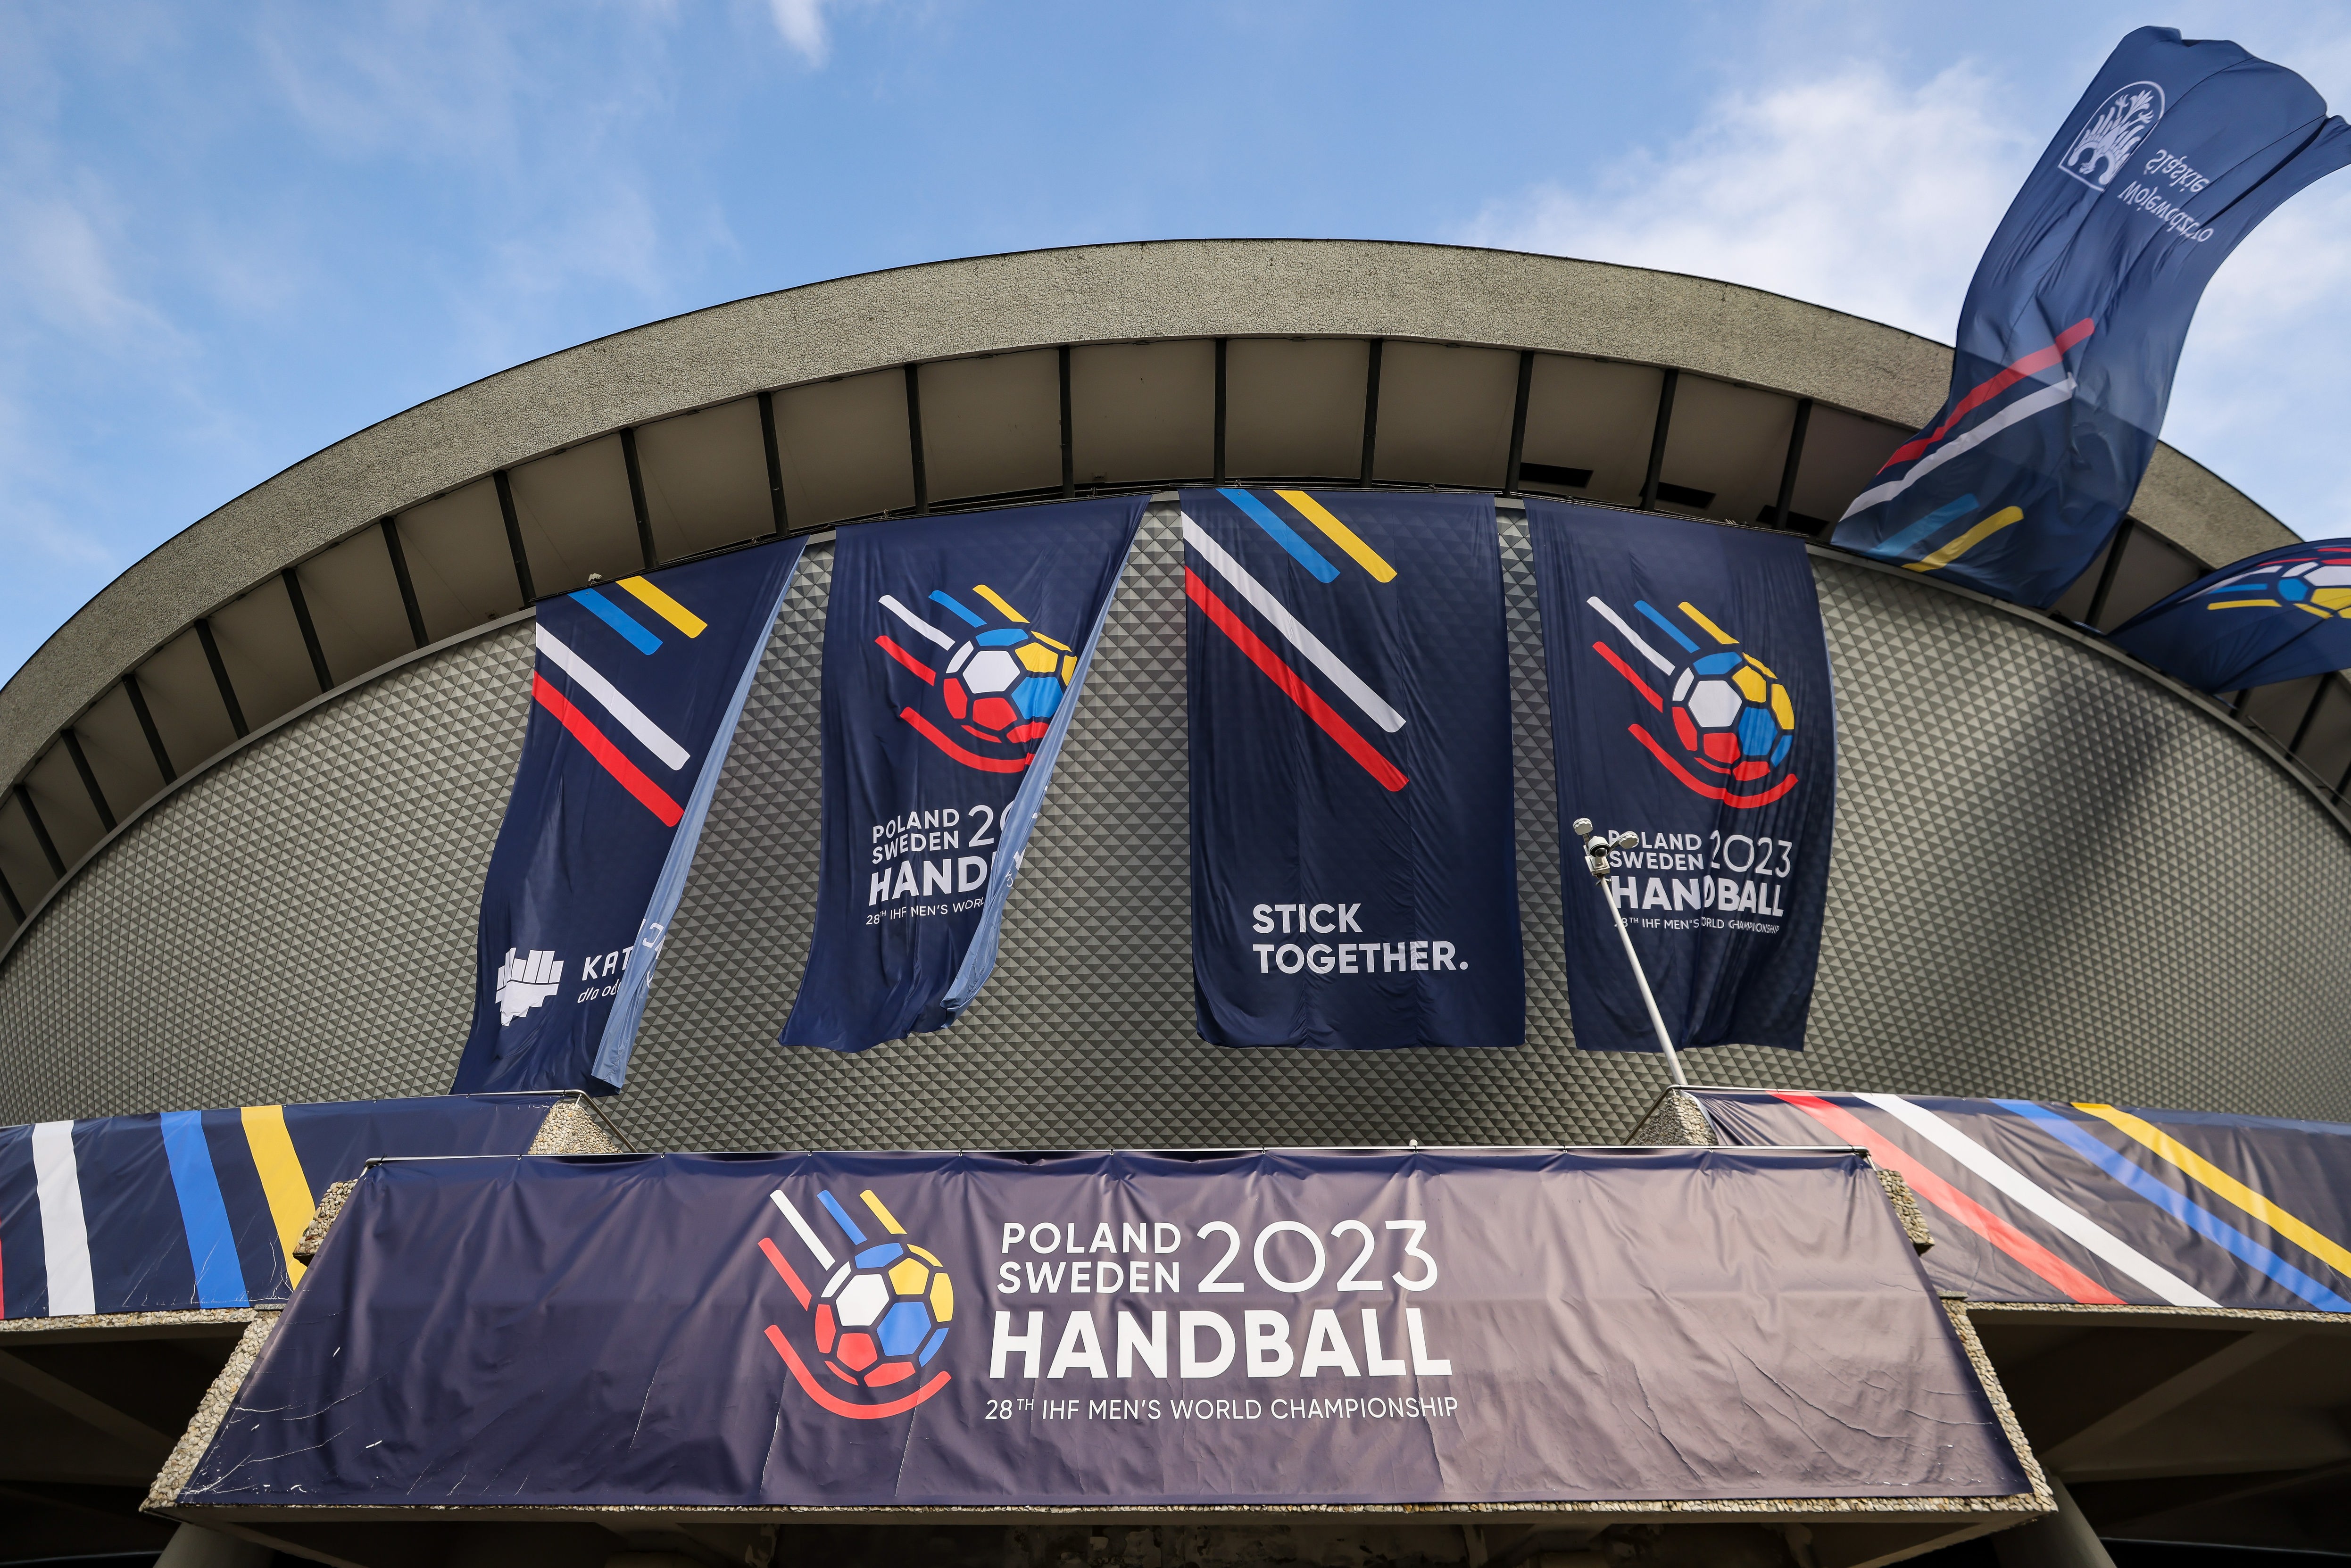 Polen - Handballer gegen Norwegen vor bisher schwerster WM-Prüfung